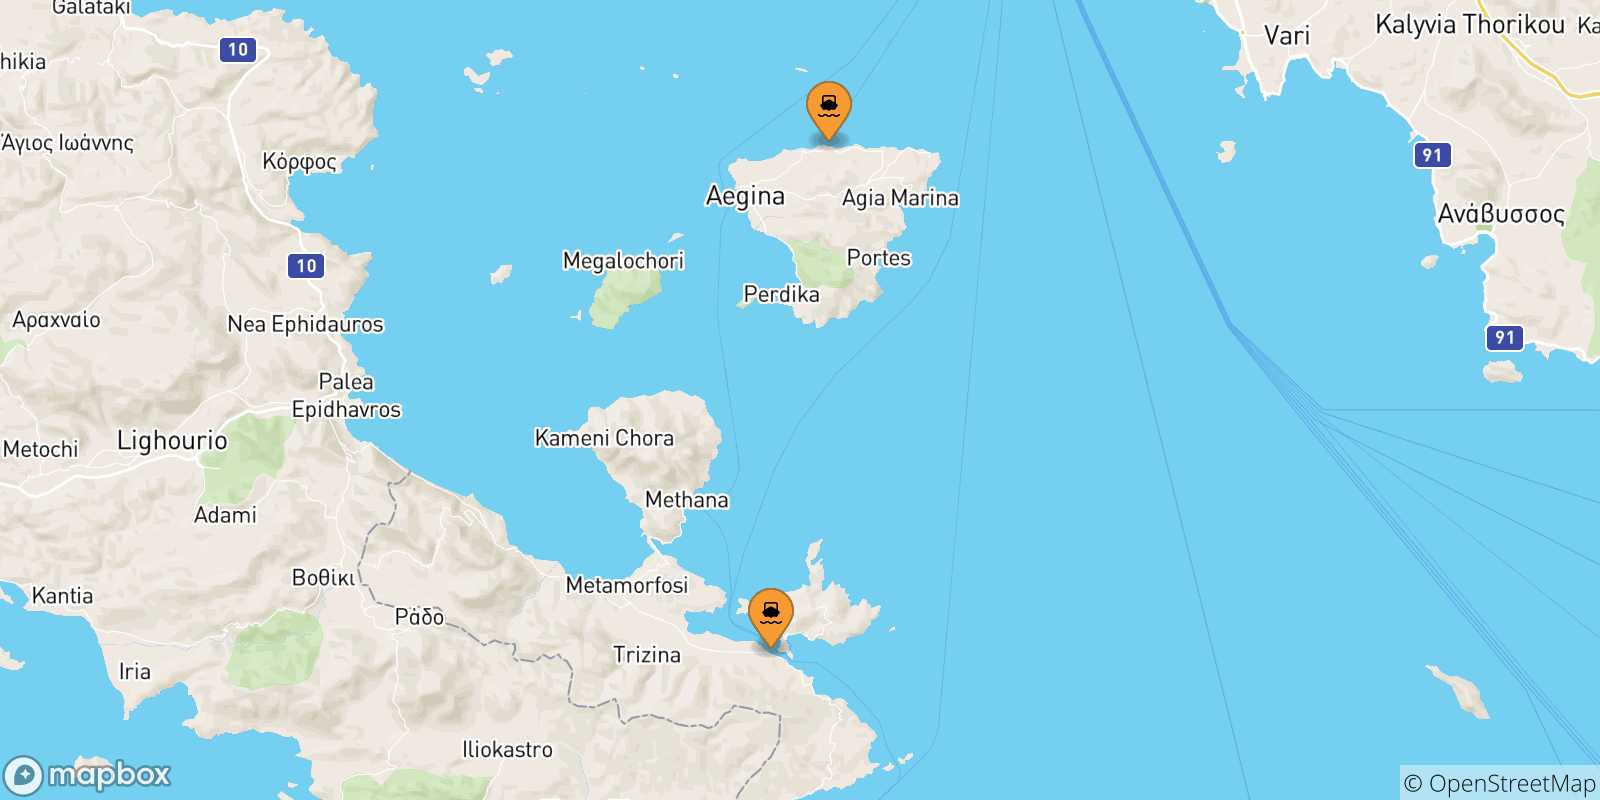 Mappa delle possibili rotte tra le Isole Saroniche e Agia Marina (Aegina)